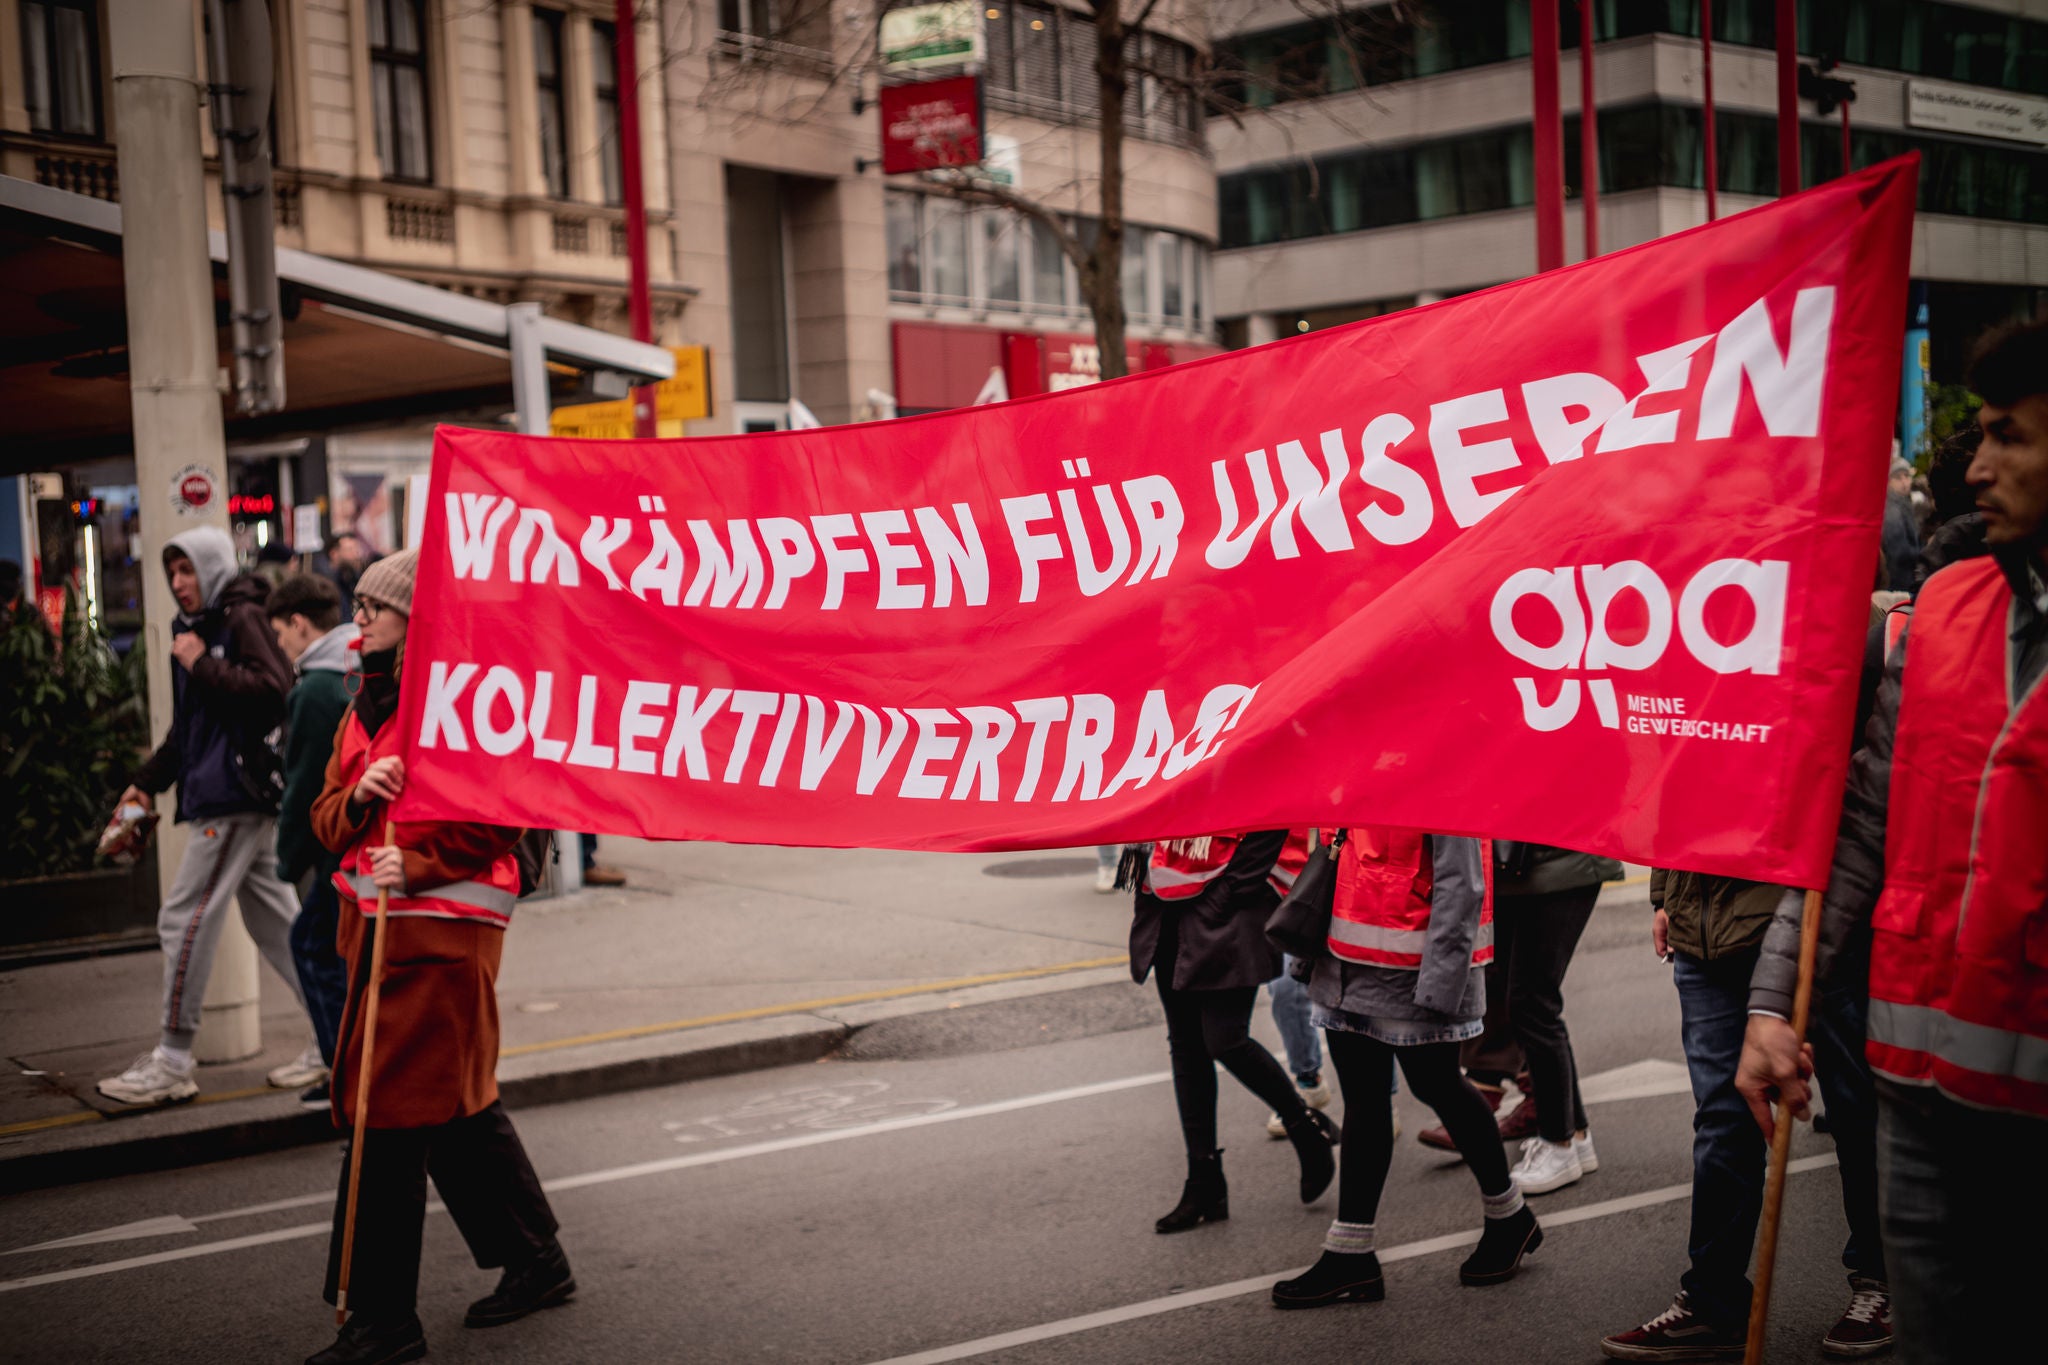  Mehr als 3000 Beschäftigte demonstrierten am 8. November um wieder Bewegung in die Kollektivvertrags-Verhandlungen zu bringen.